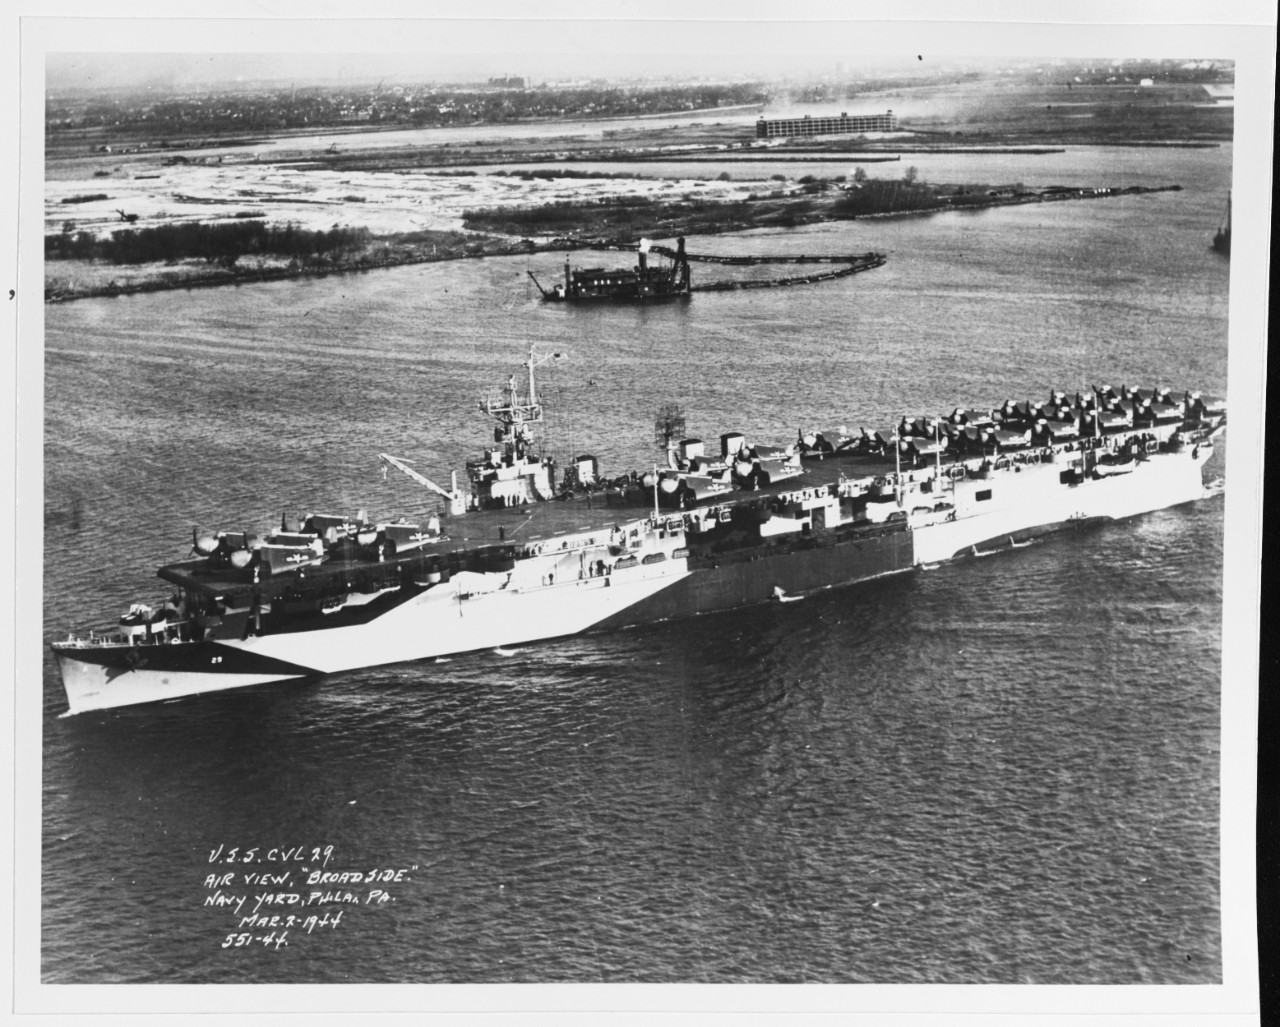 USS BATANN (CVL-29)